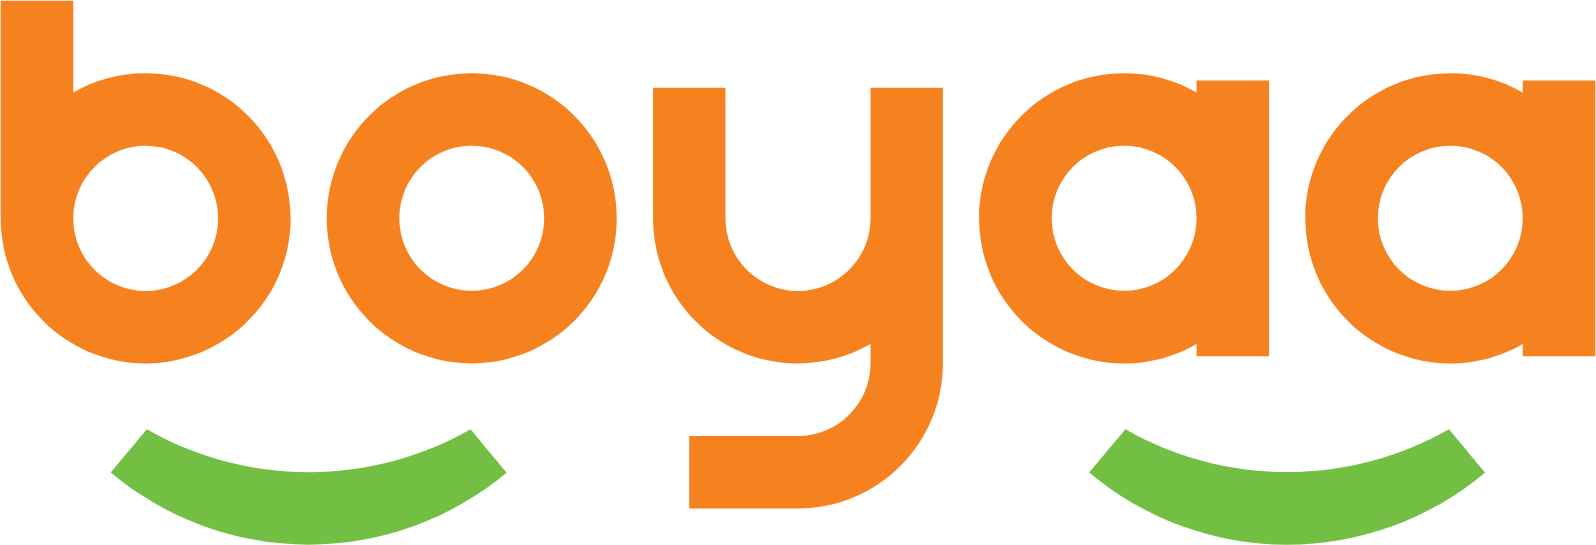 Boyaa Interactive logo large (transparent PNG)